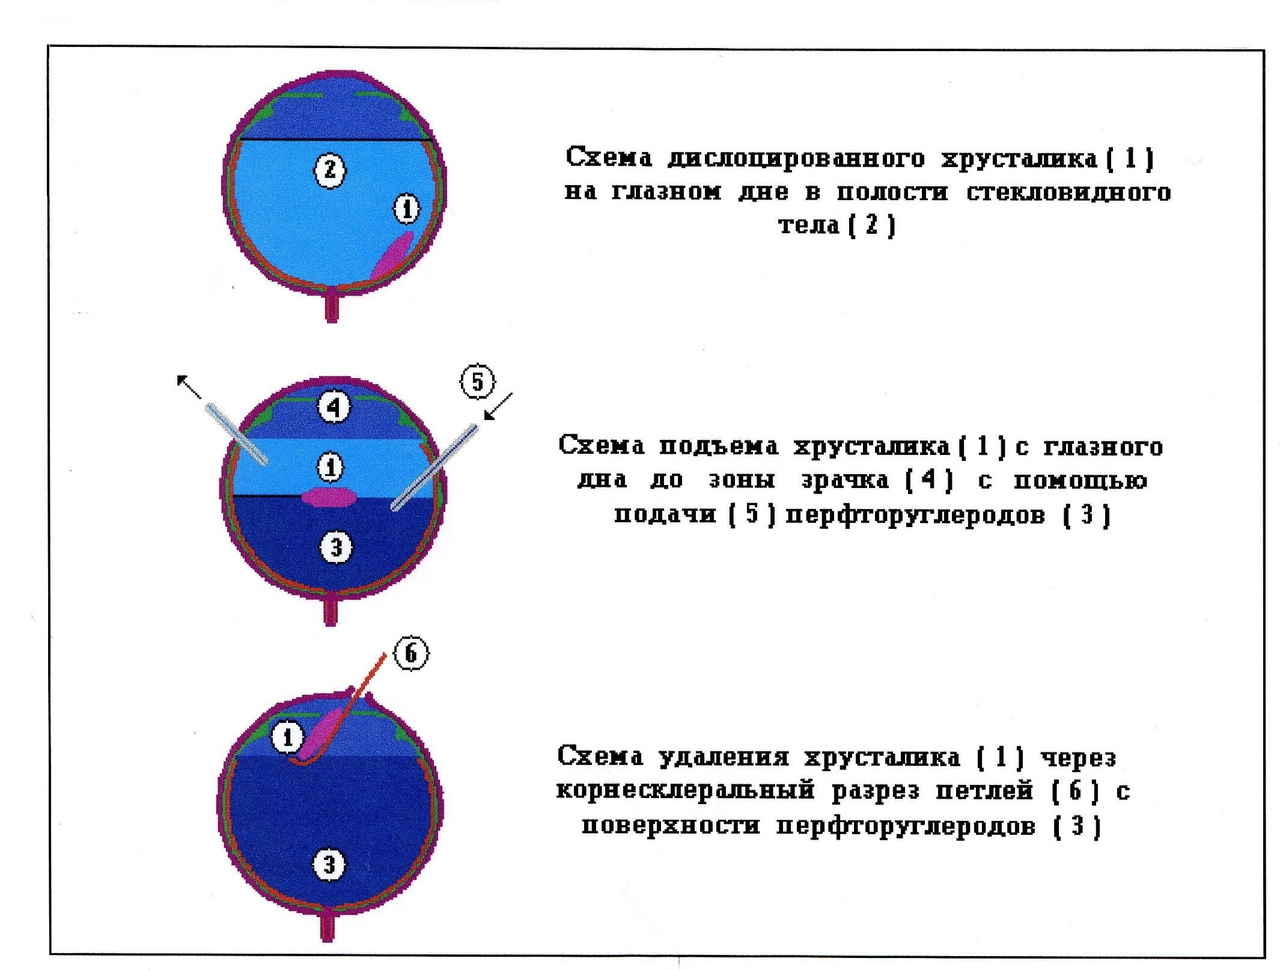 ПФОС в офтальмологии (Воробьев С.И.)